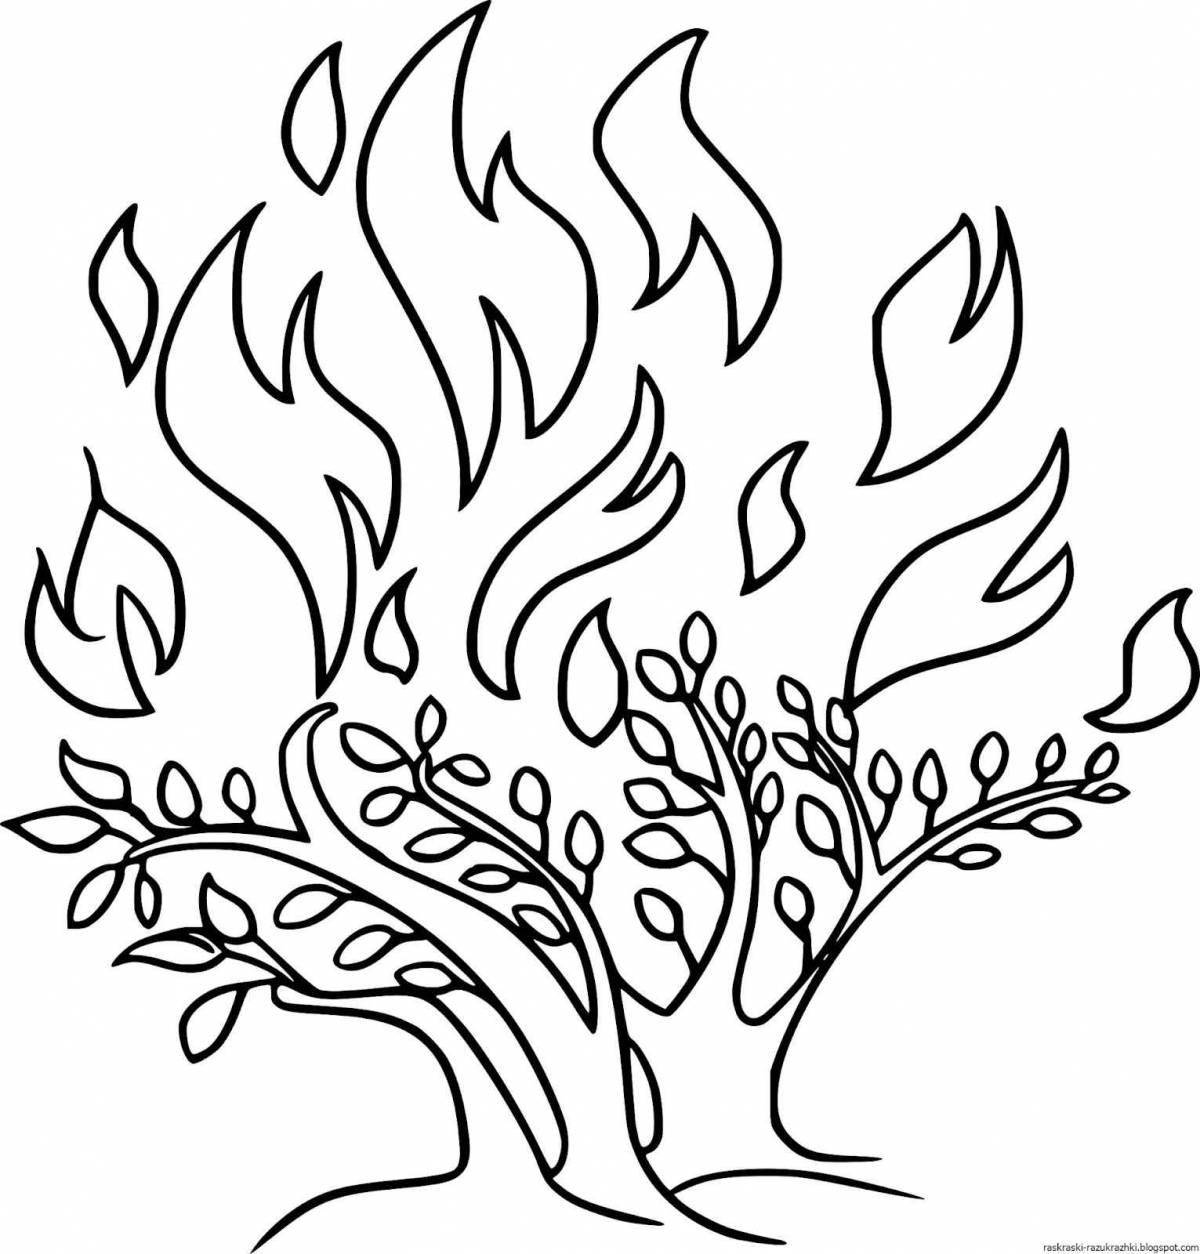 Ярко окрашенная страница спасите лес от пожара